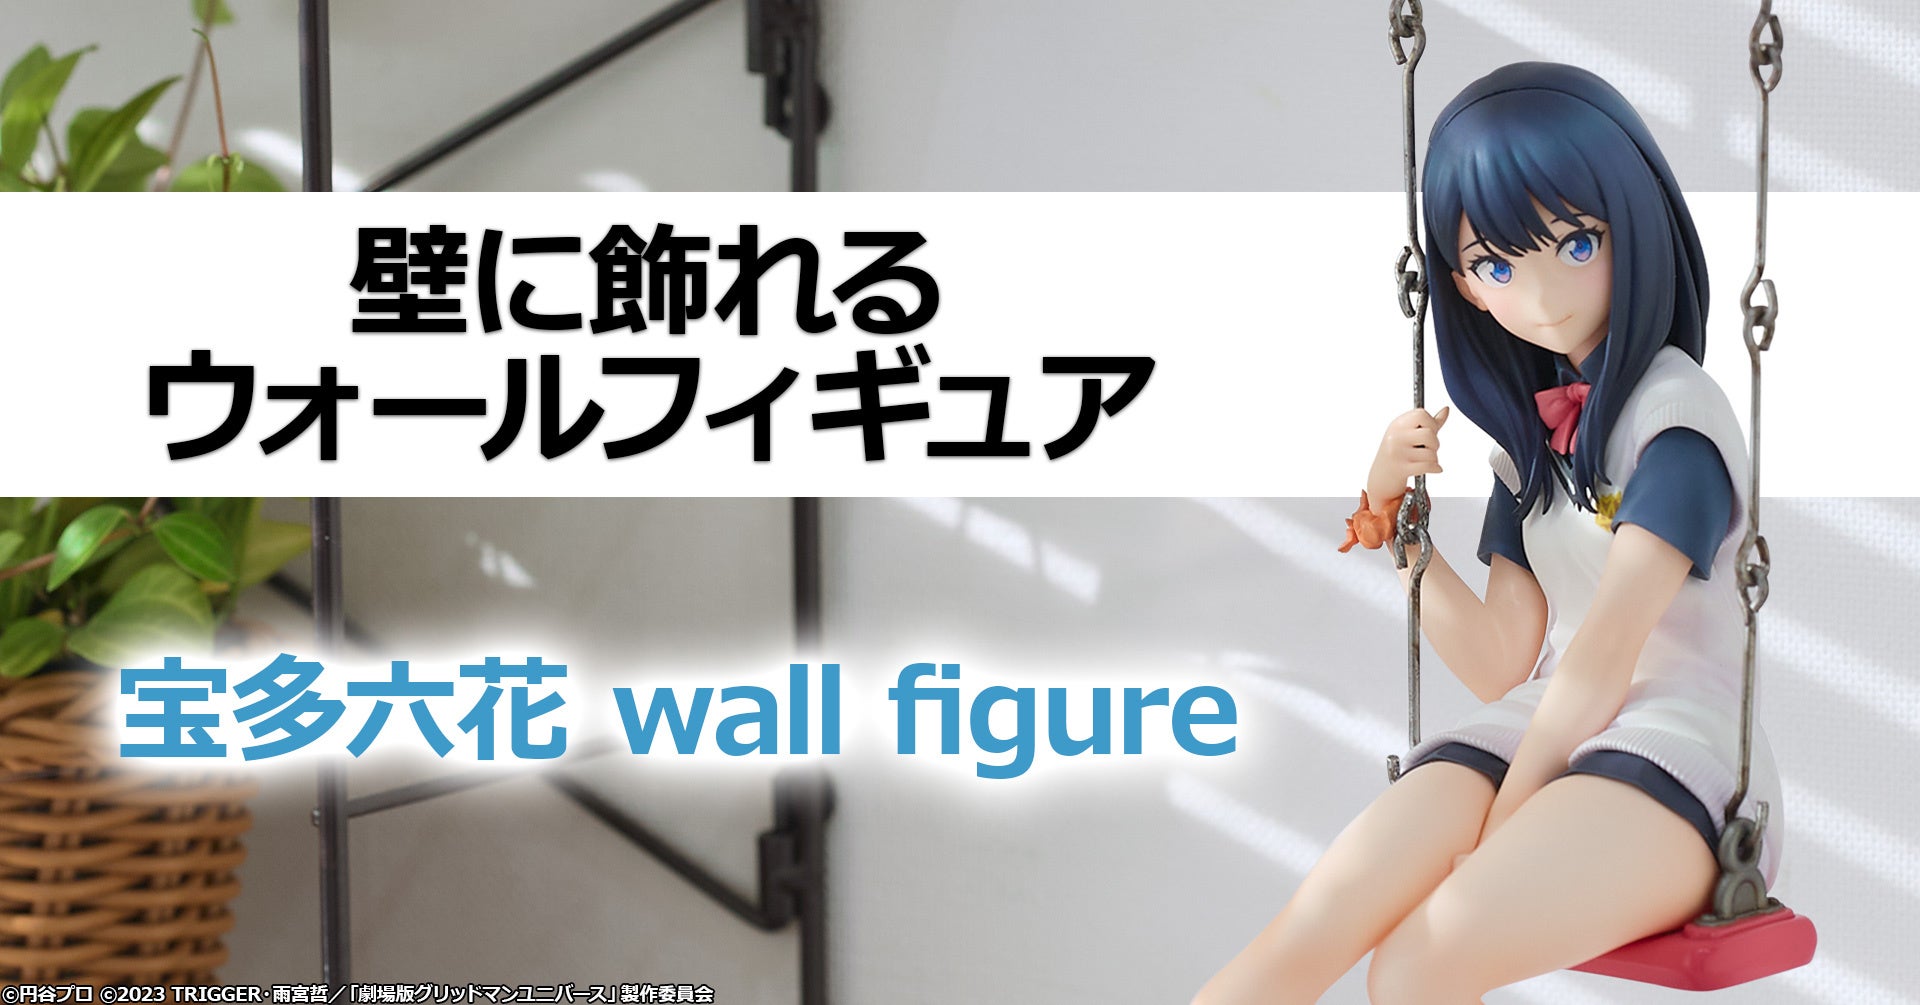 業界初!?壁に飾れるフィギュアとして「宝多六花 wall figure」を予約受付開始!!